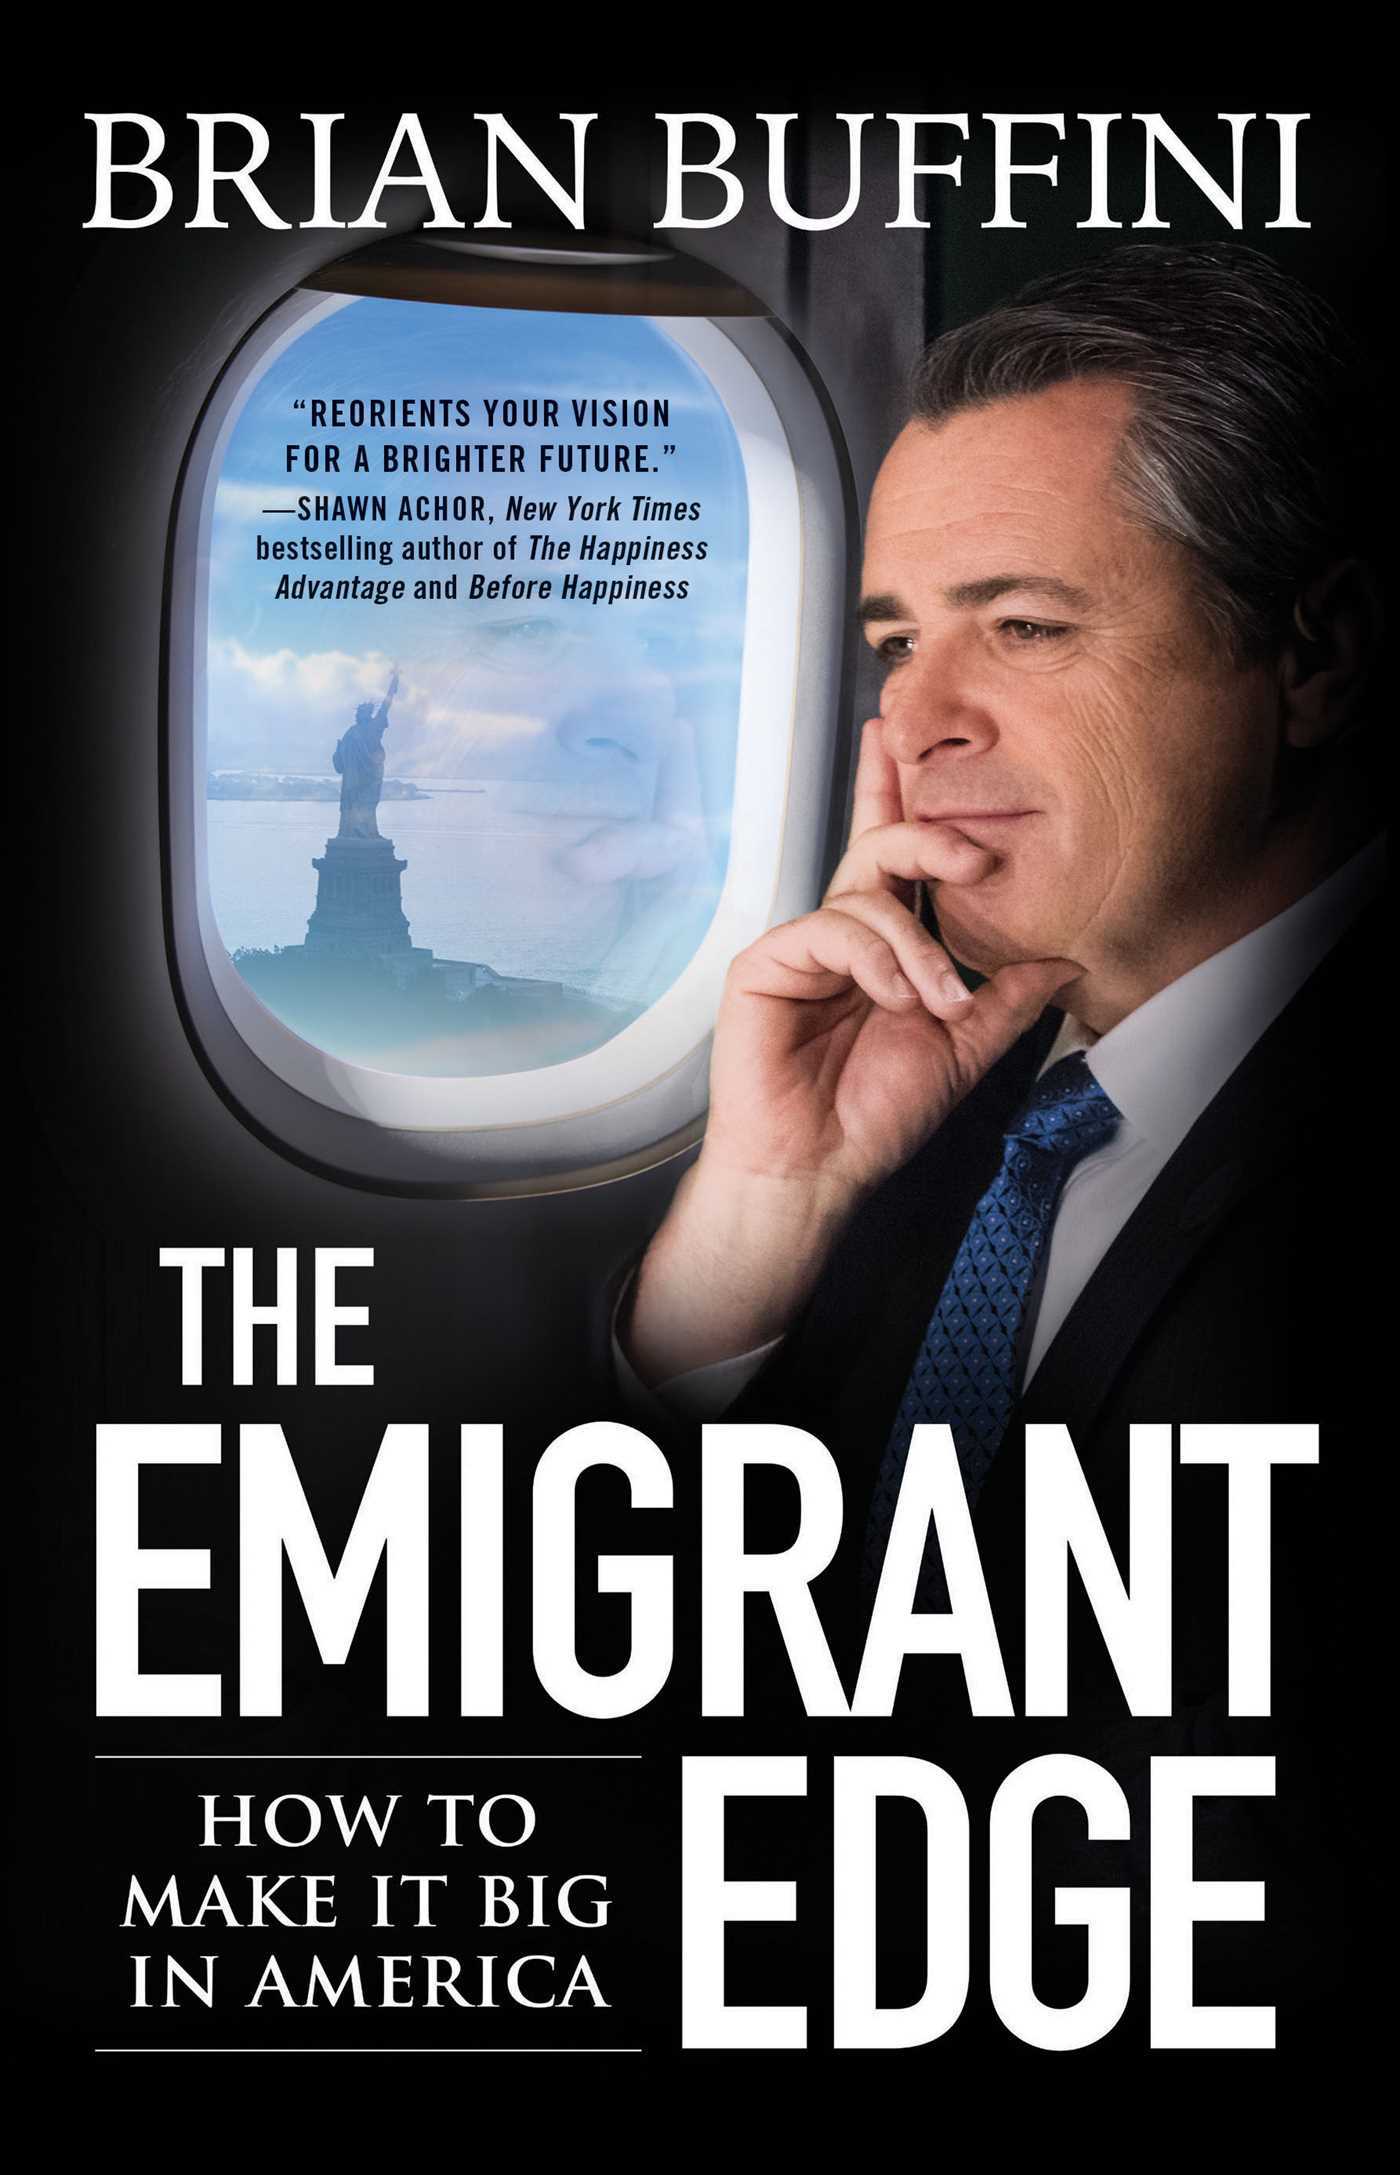 The Emigrant Edge